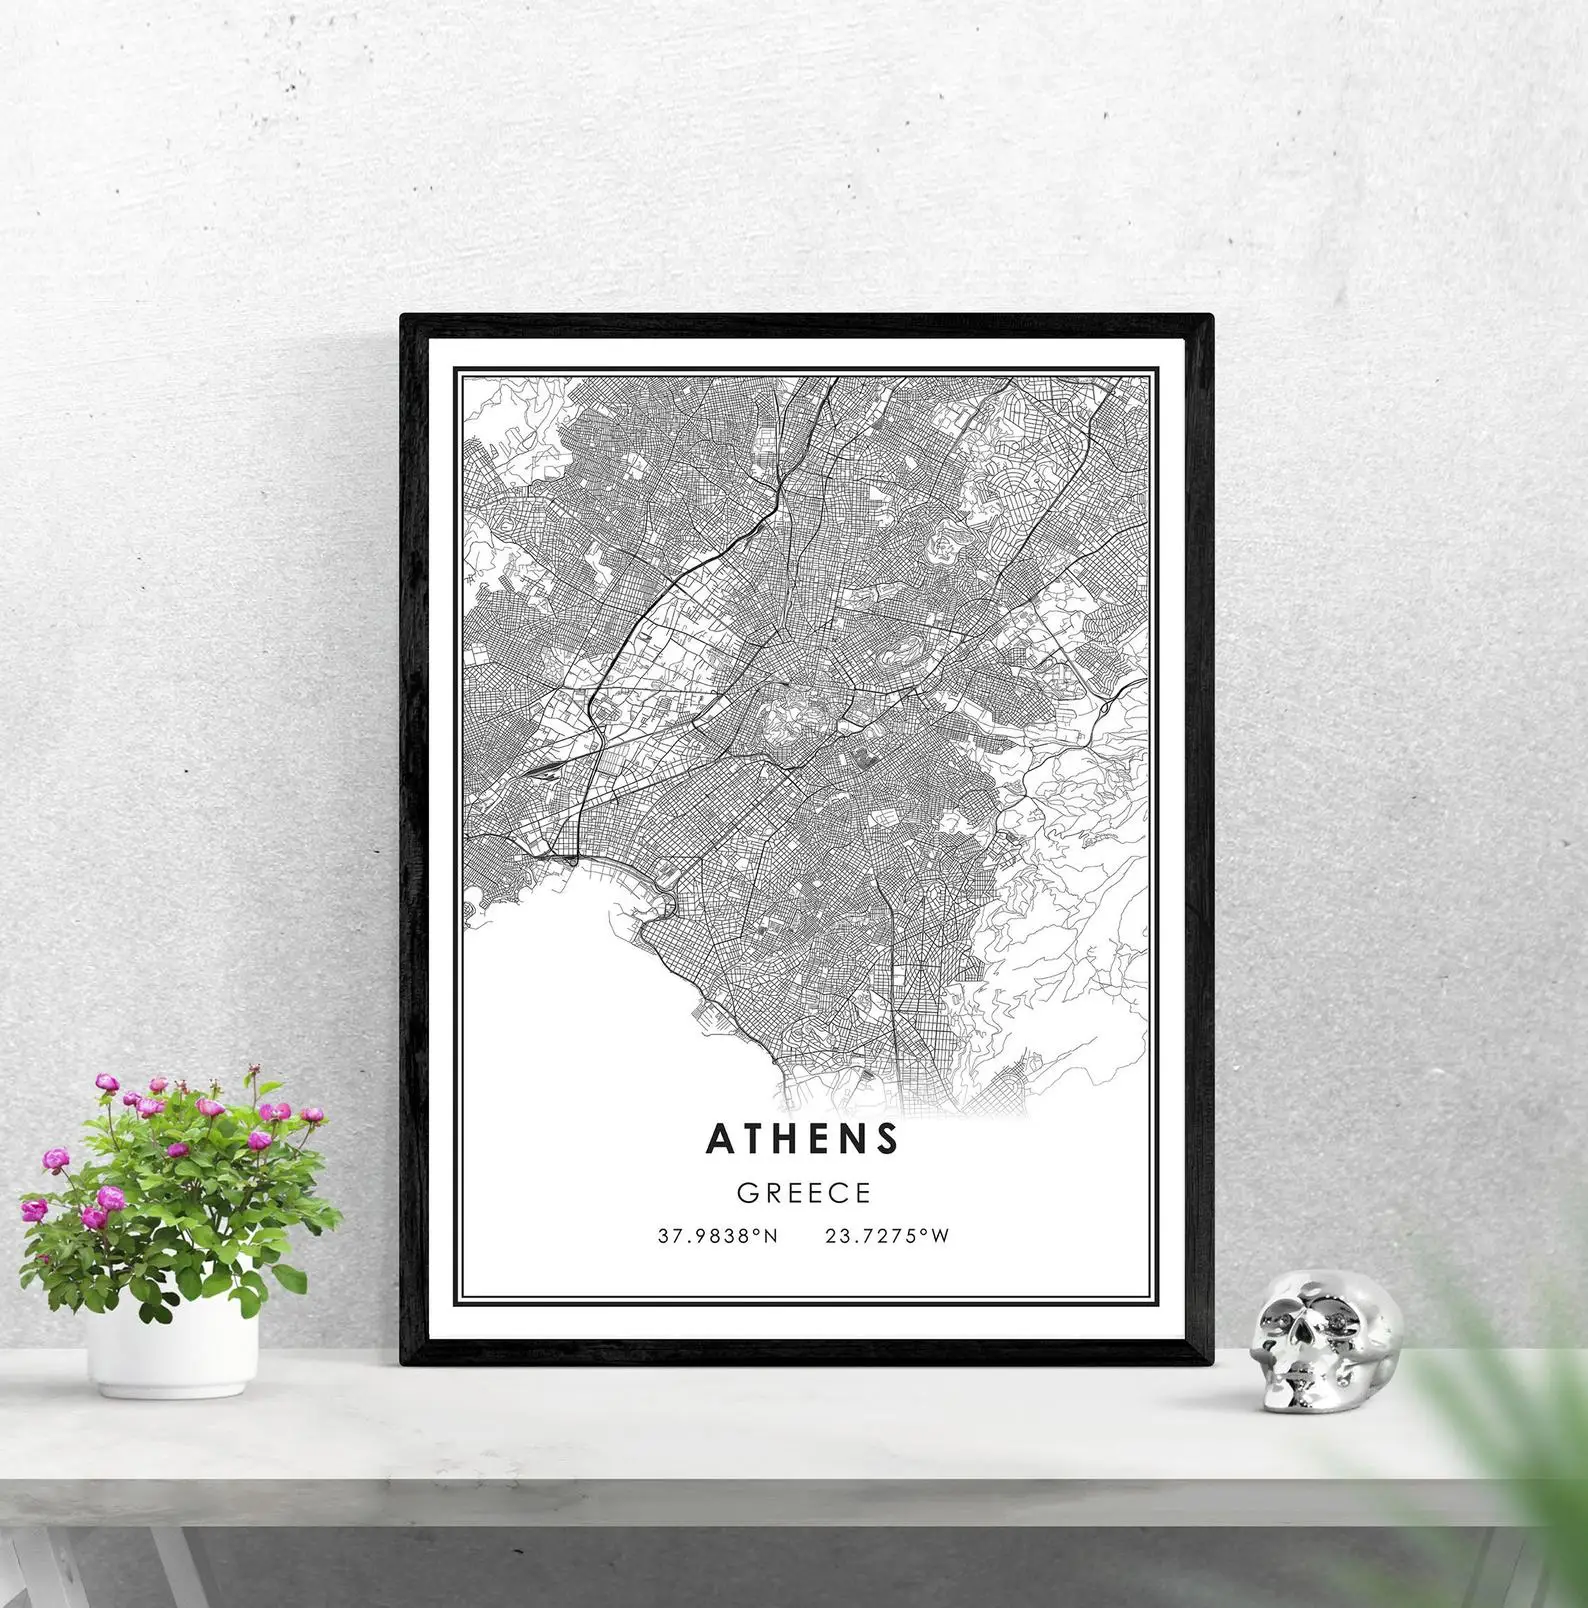 Плакат с картой Афин холст | Карта города Афины Греция печать плакатов